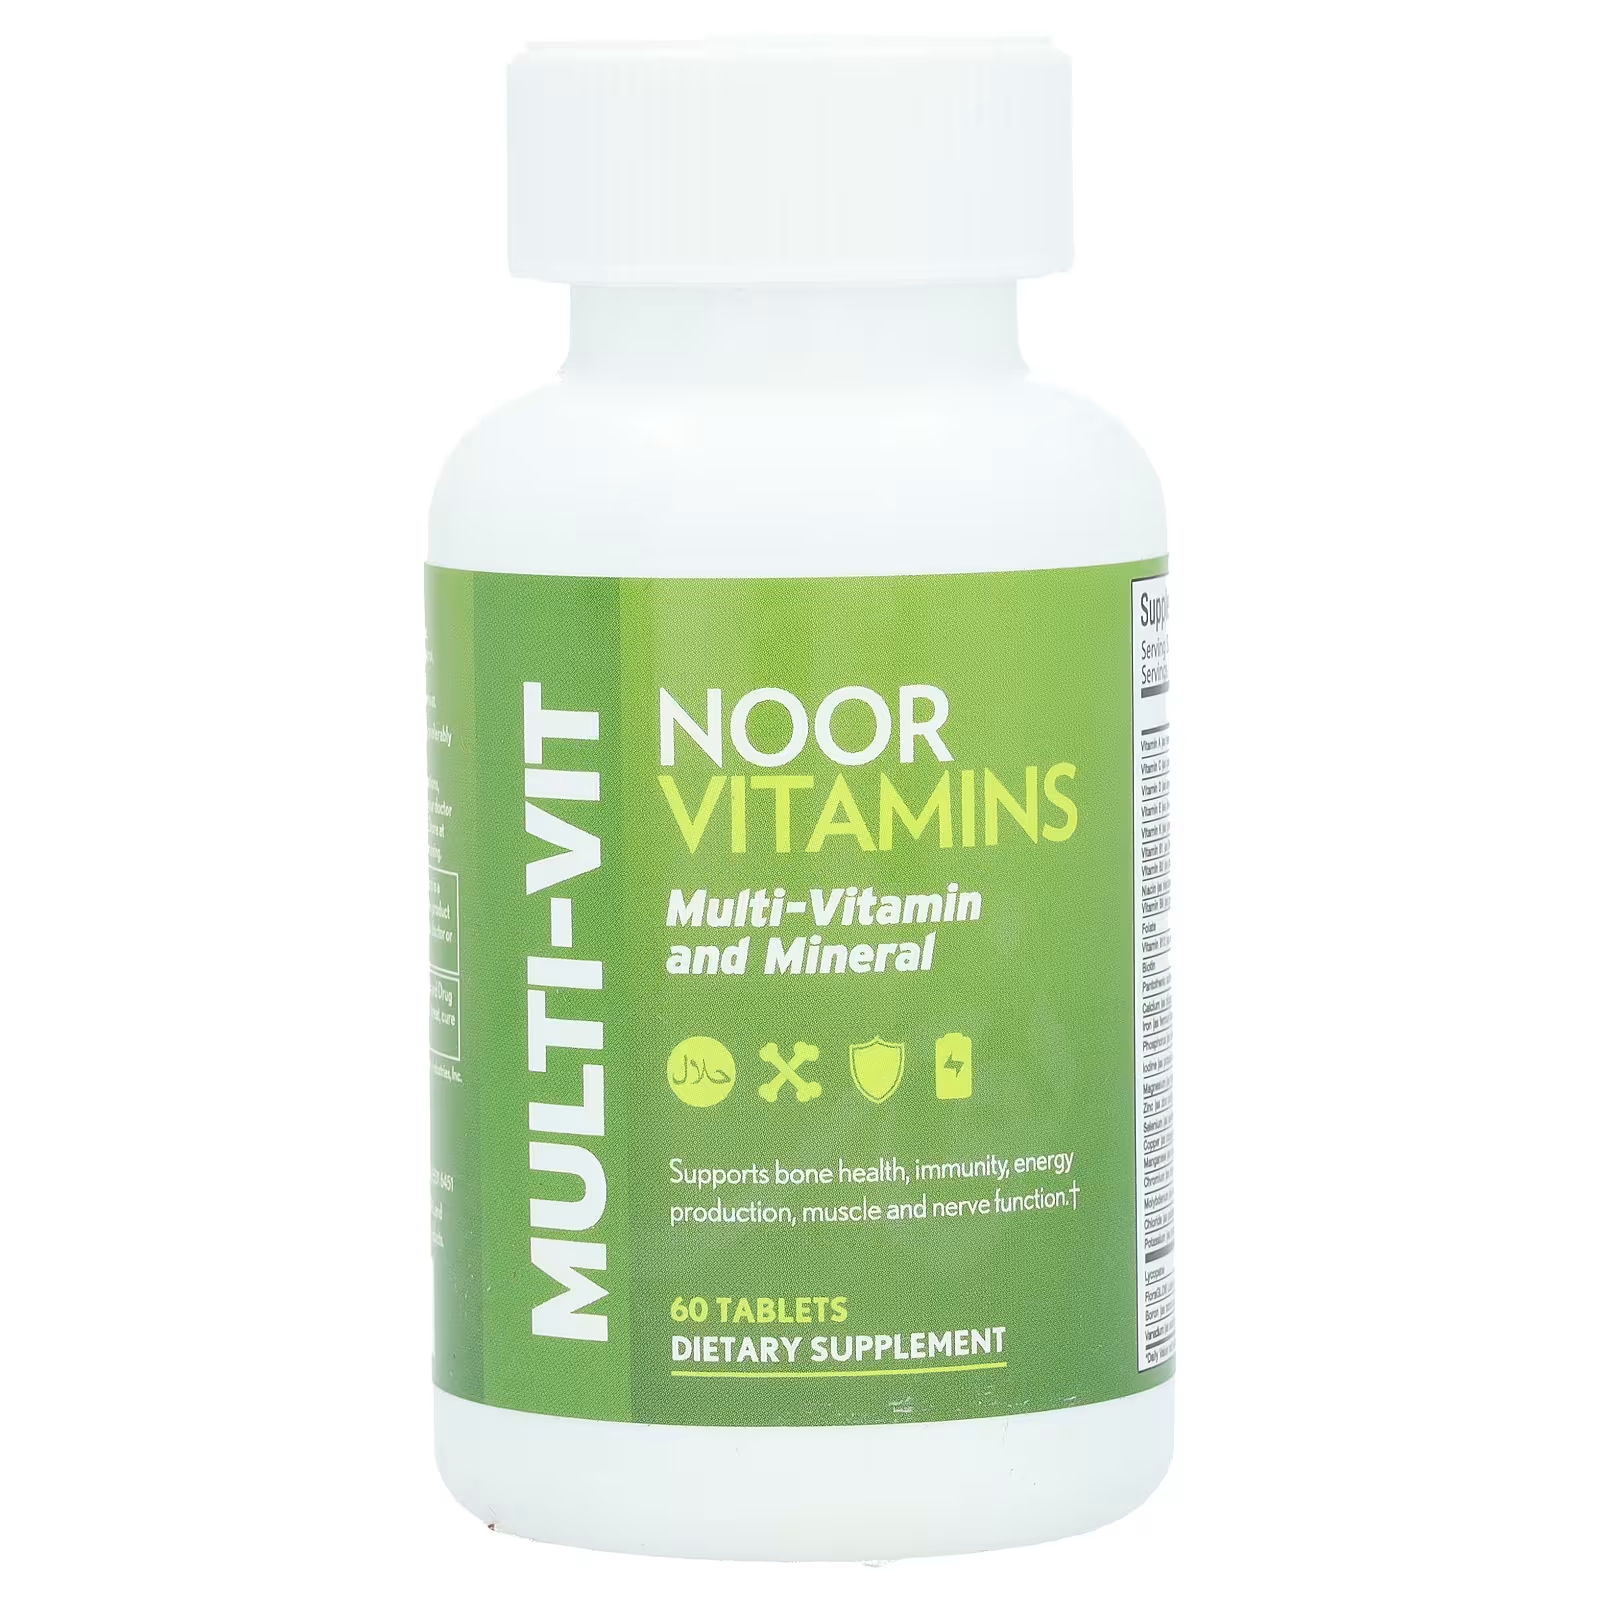 Мультивитамины и минералы Noor Vitamins, 60 таблеток noor витамины мультивитамины и минералы 60 таблеток noor vitamins